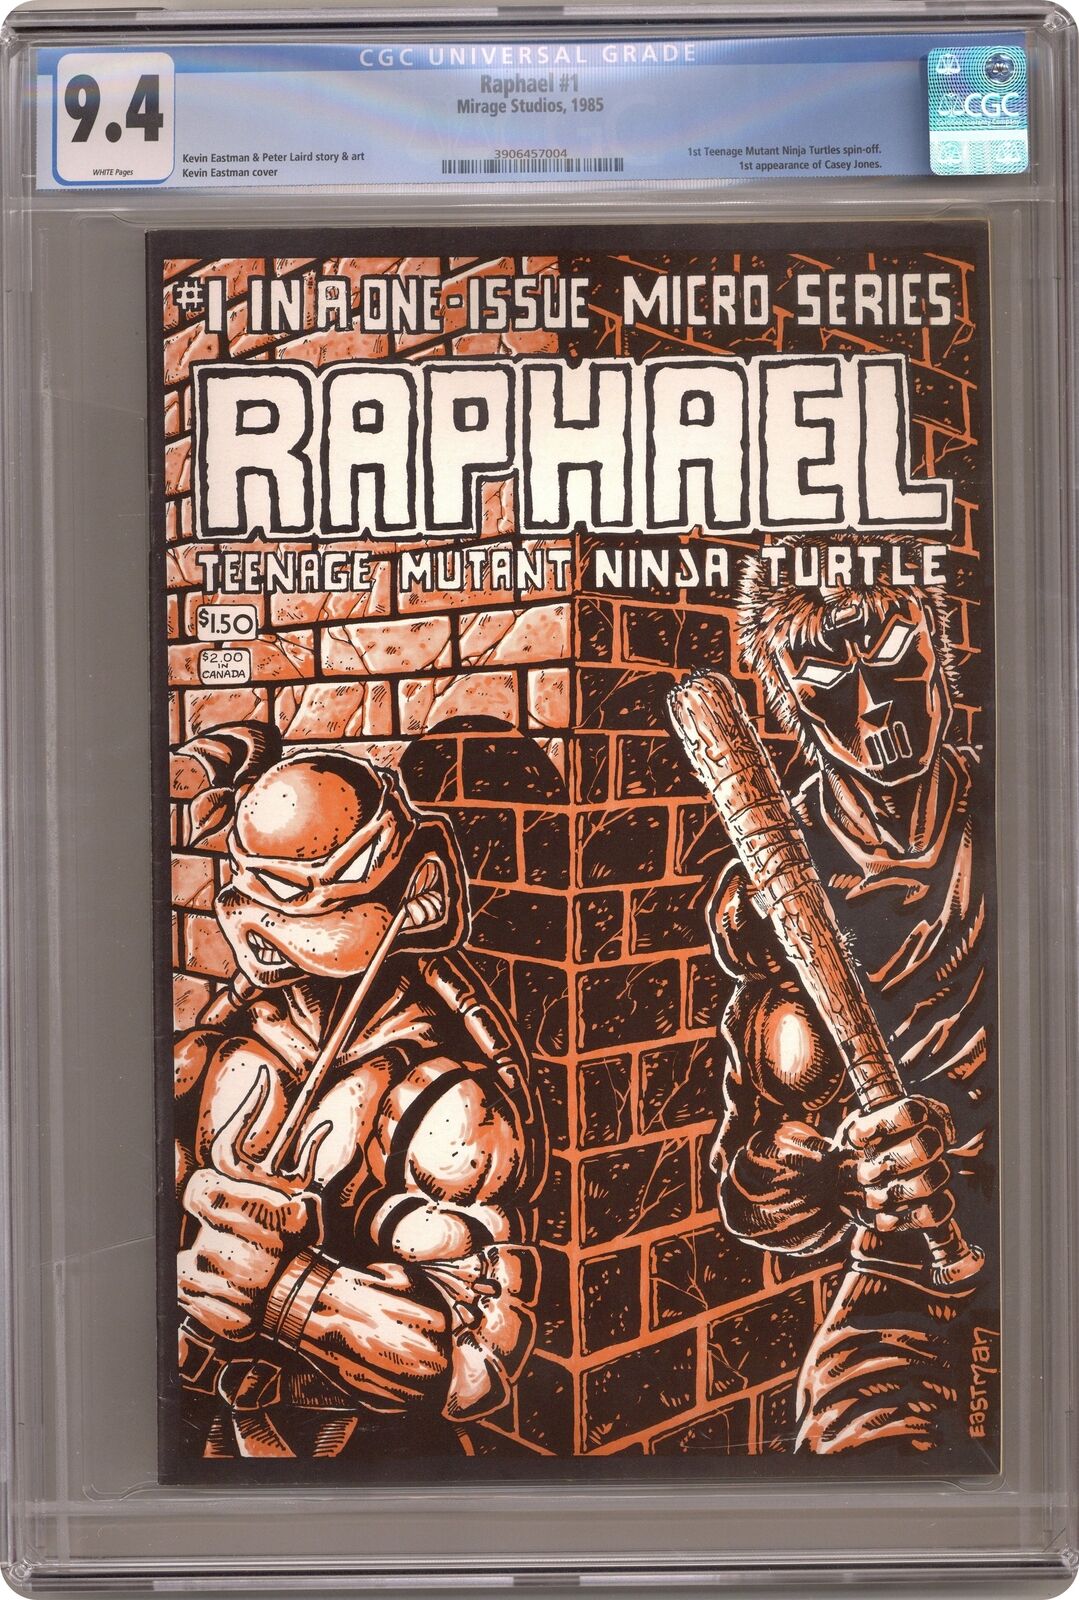 Raphael Teenage Mutant Ninja Turtles #1 Eastman 1st Printing CGC 9.4 1985